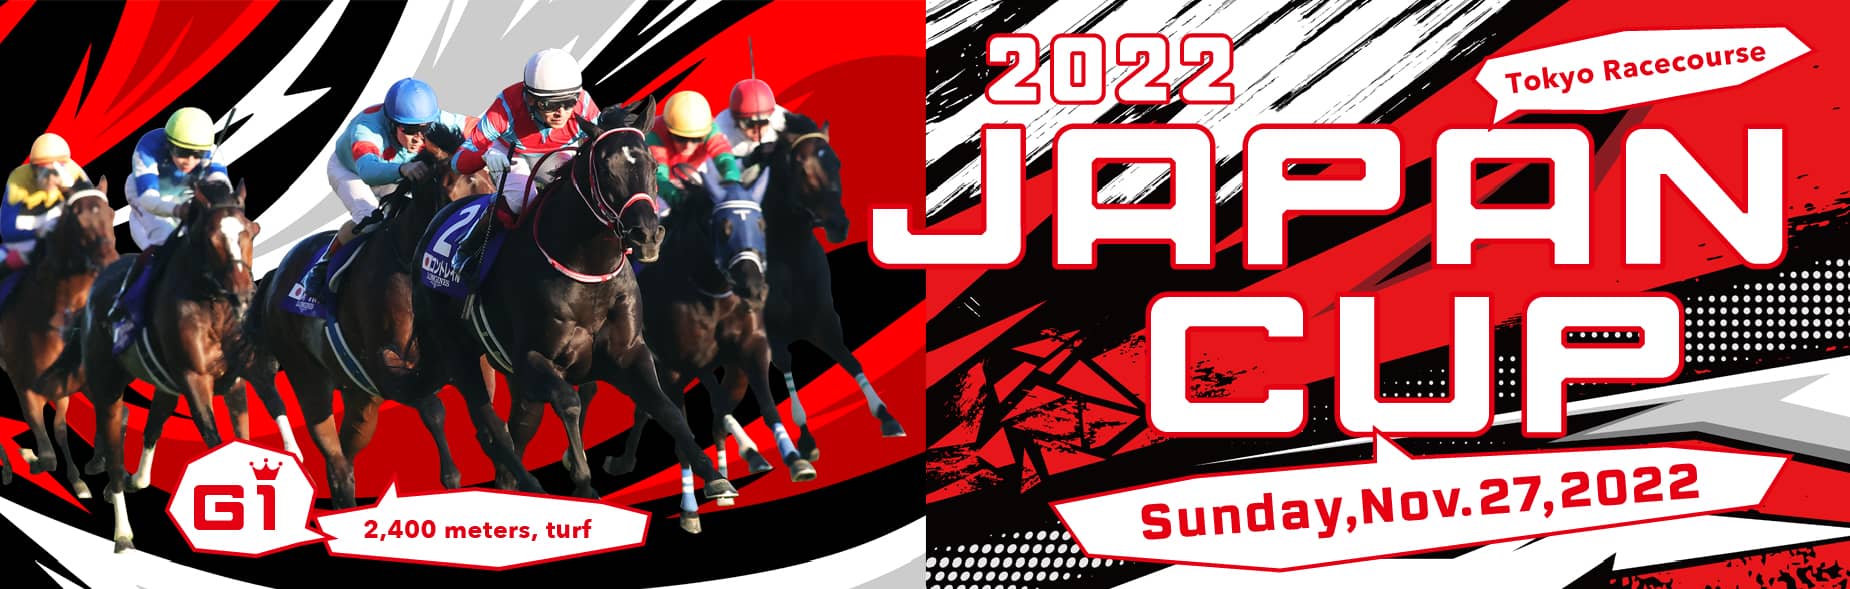 2022 Japan Cup Sunday,Nov.27,2022 Tokyo Racecourse G1 2,400meters,turf 